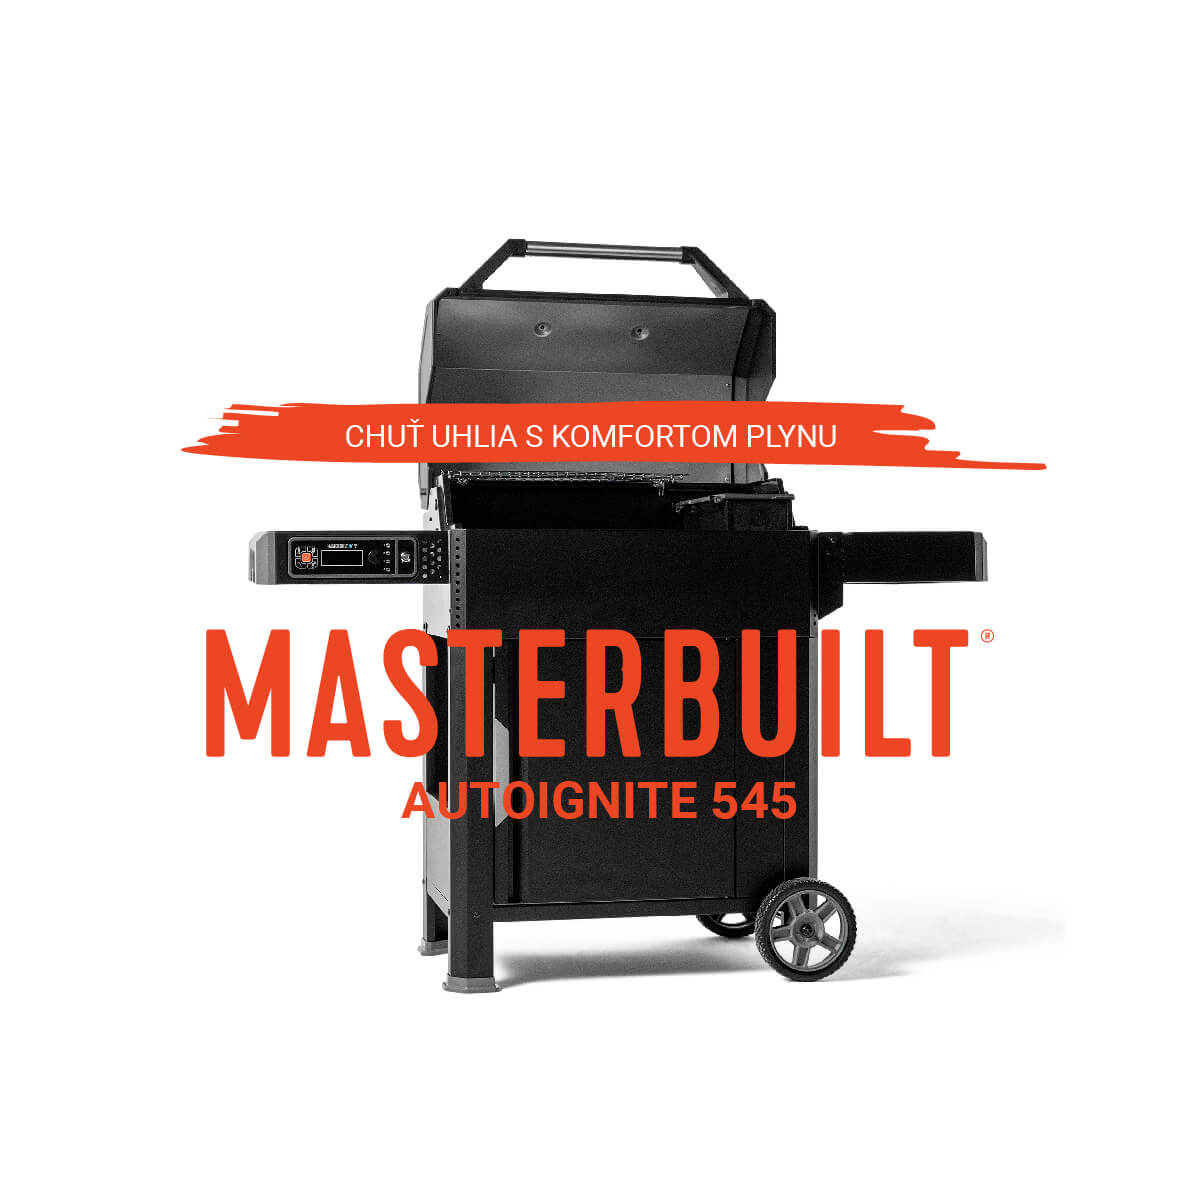 Grilovanie na drevenom uhlí s jednoduchosťou plynových grilov: Nový gril Masterbuilt Gravity 545 AutoIgnite